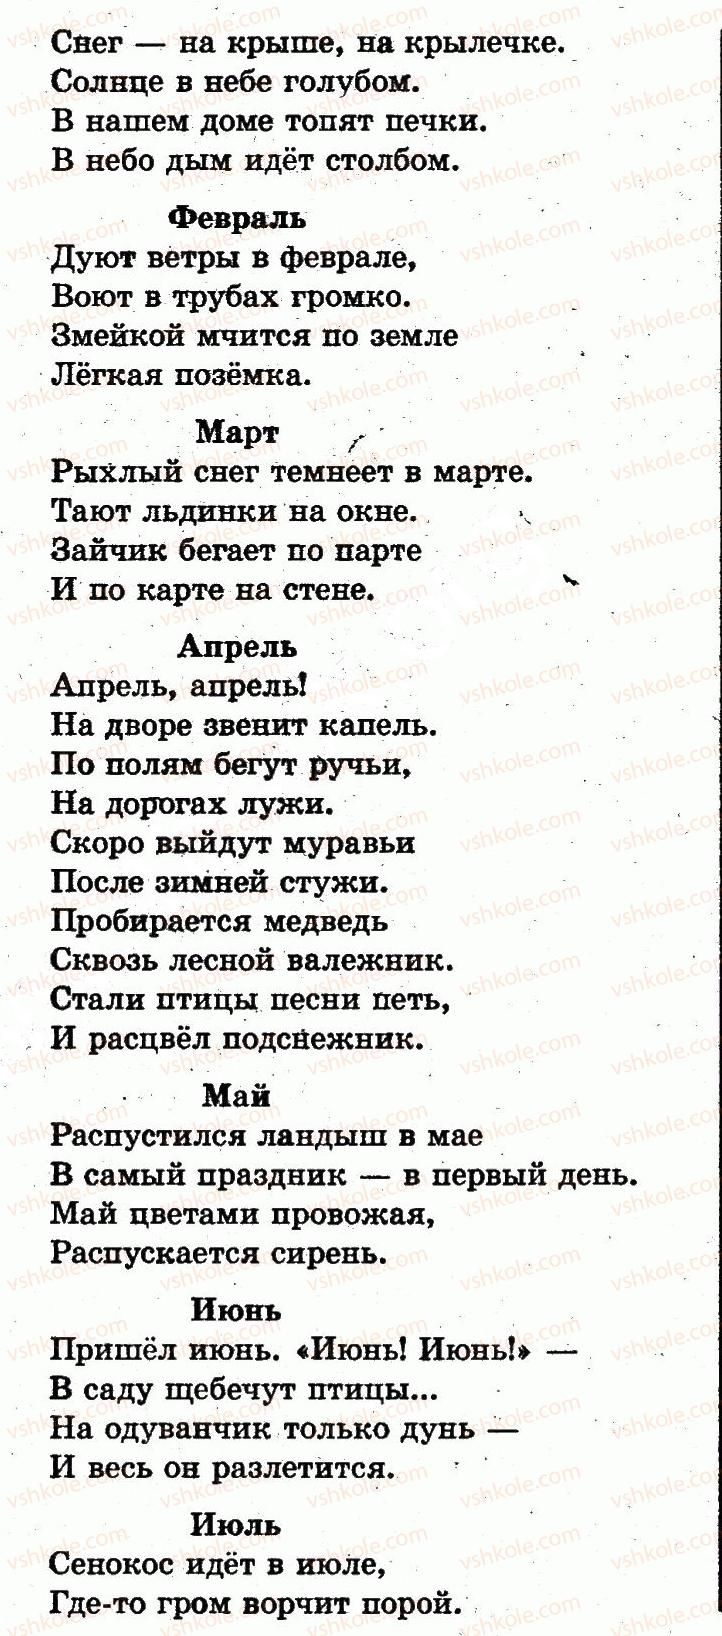 1-russkij-yazyk-in-lapshina-nn-zorka-2012--vremya-sutki-страница84-rnd5124.jpg